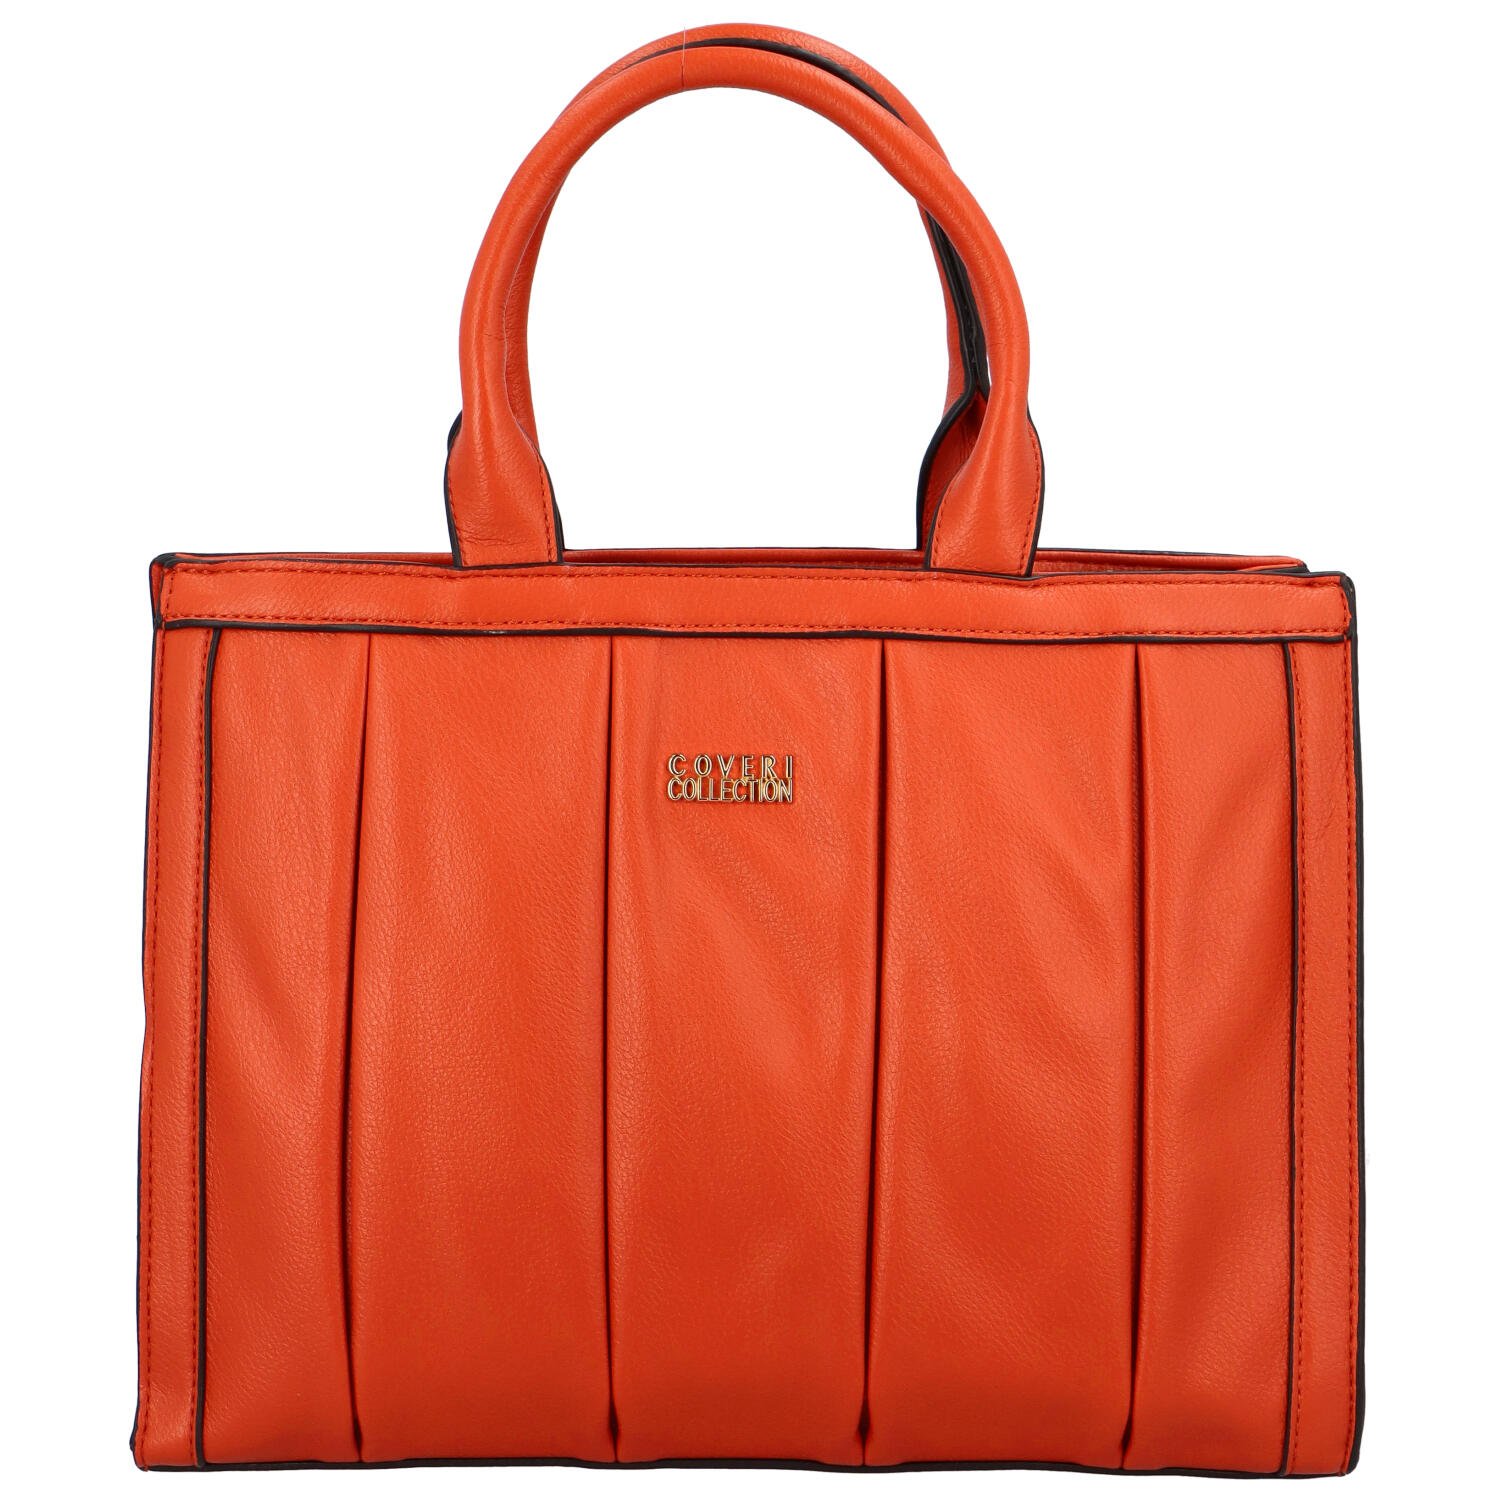 Elegantní kabelka do ruky Penelope, oranžová.